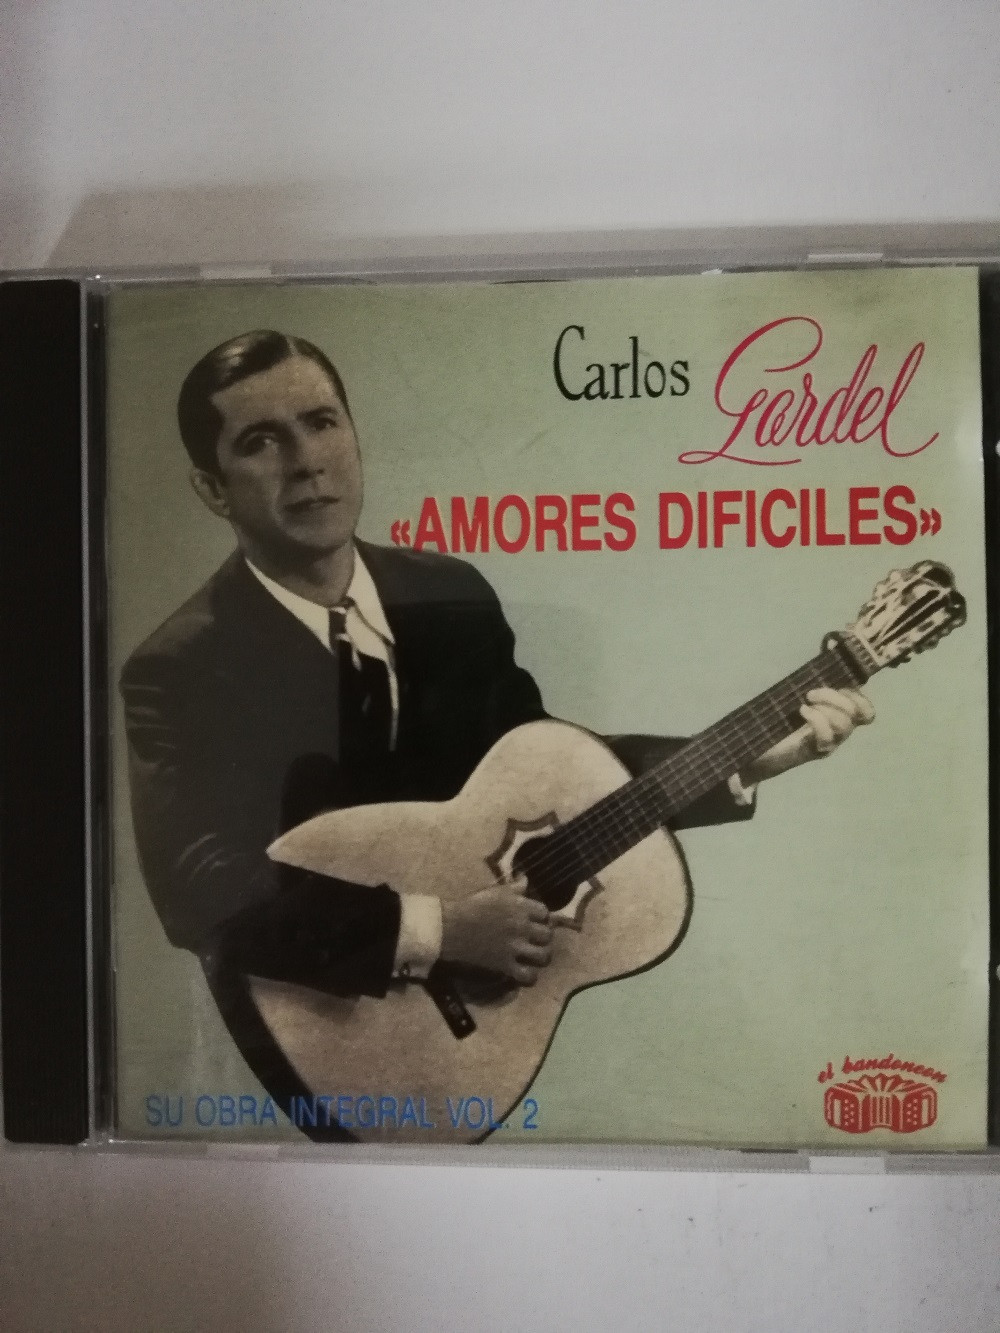 Imagen CD CARLOS GARDEL - AMORES DIFICILES, SU OBRA INTEGRA VOL. 2